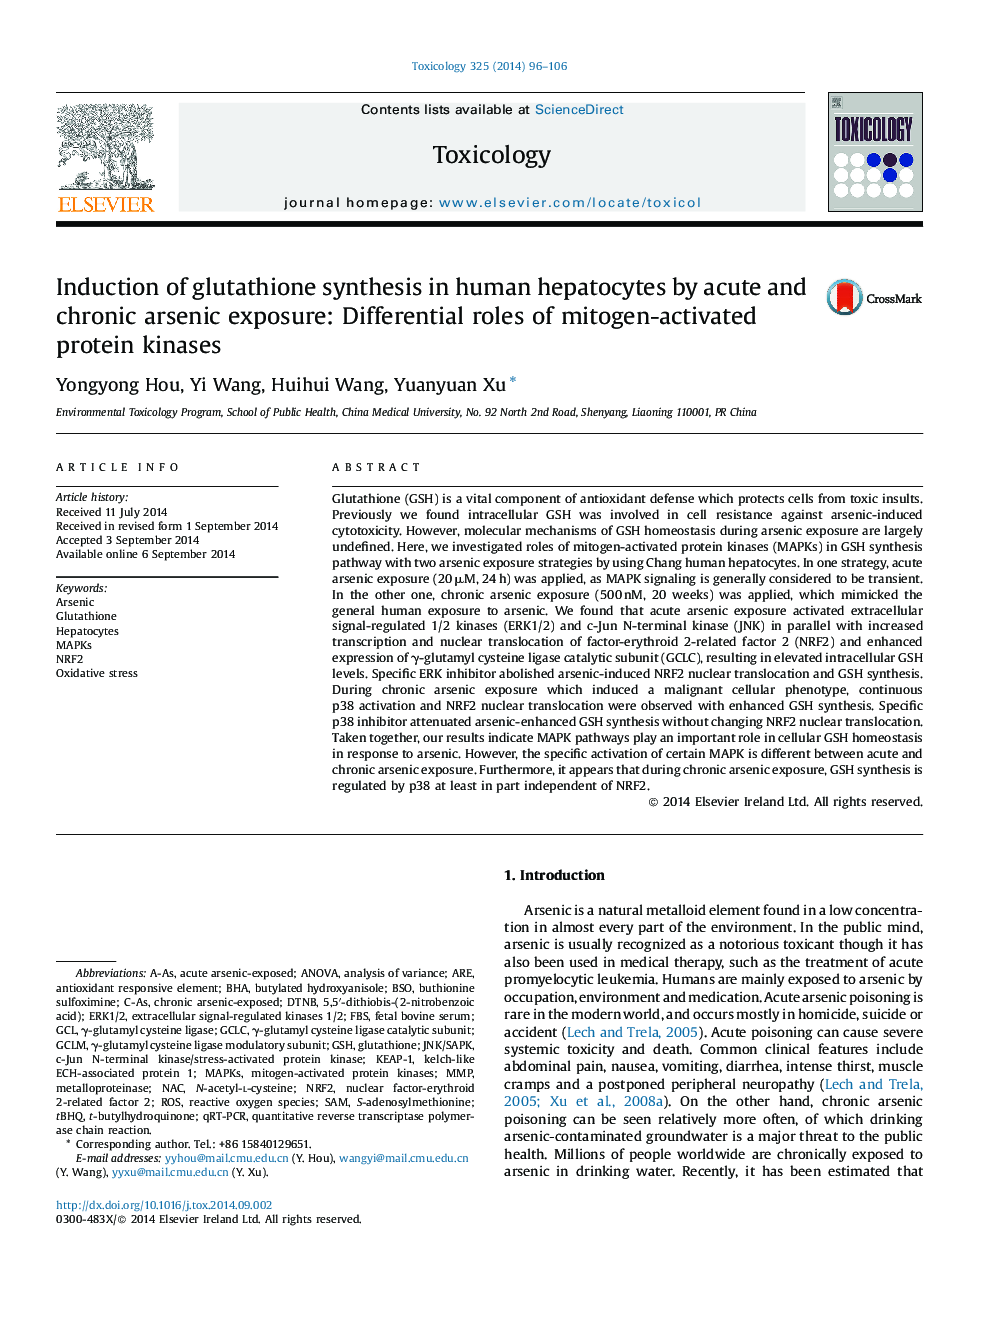 القاء سنتز گلوتاتیون در هپاتوسیت های انسانی با قرار گرفتن در معرض آرسنیک حاد و مزمن: نقش های متفاوتی از پروتئین کیناز فعال شده با میتوکند 